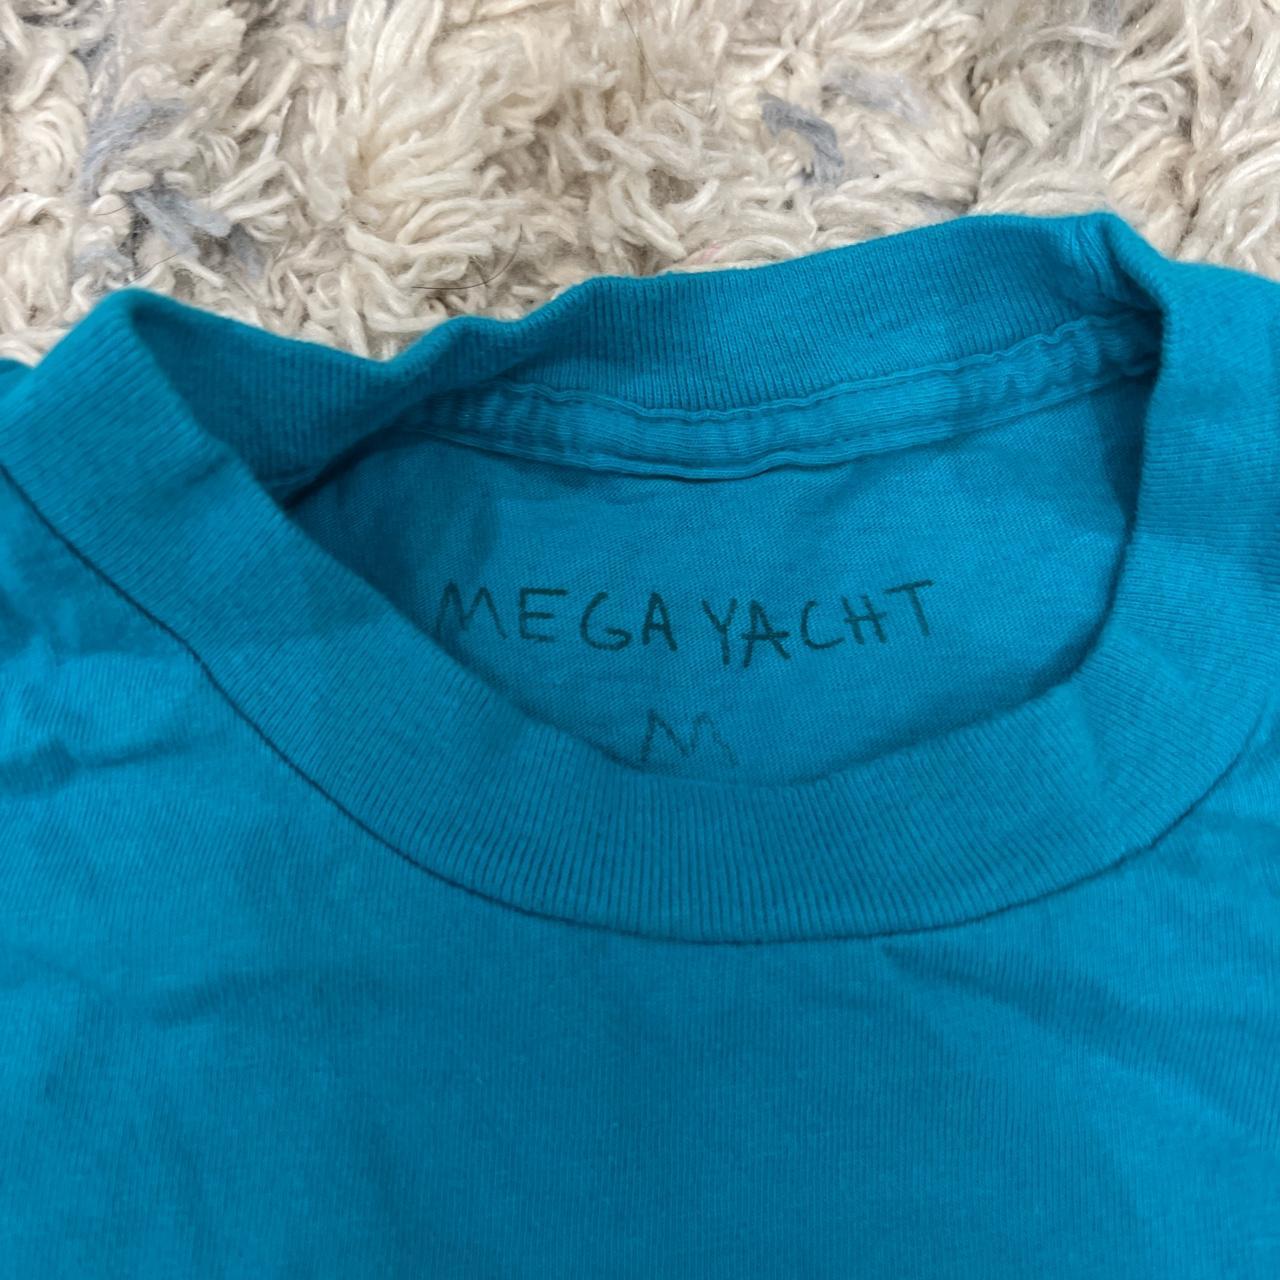 Megayacht casper Louis Vuitton shirt, Flaw in second